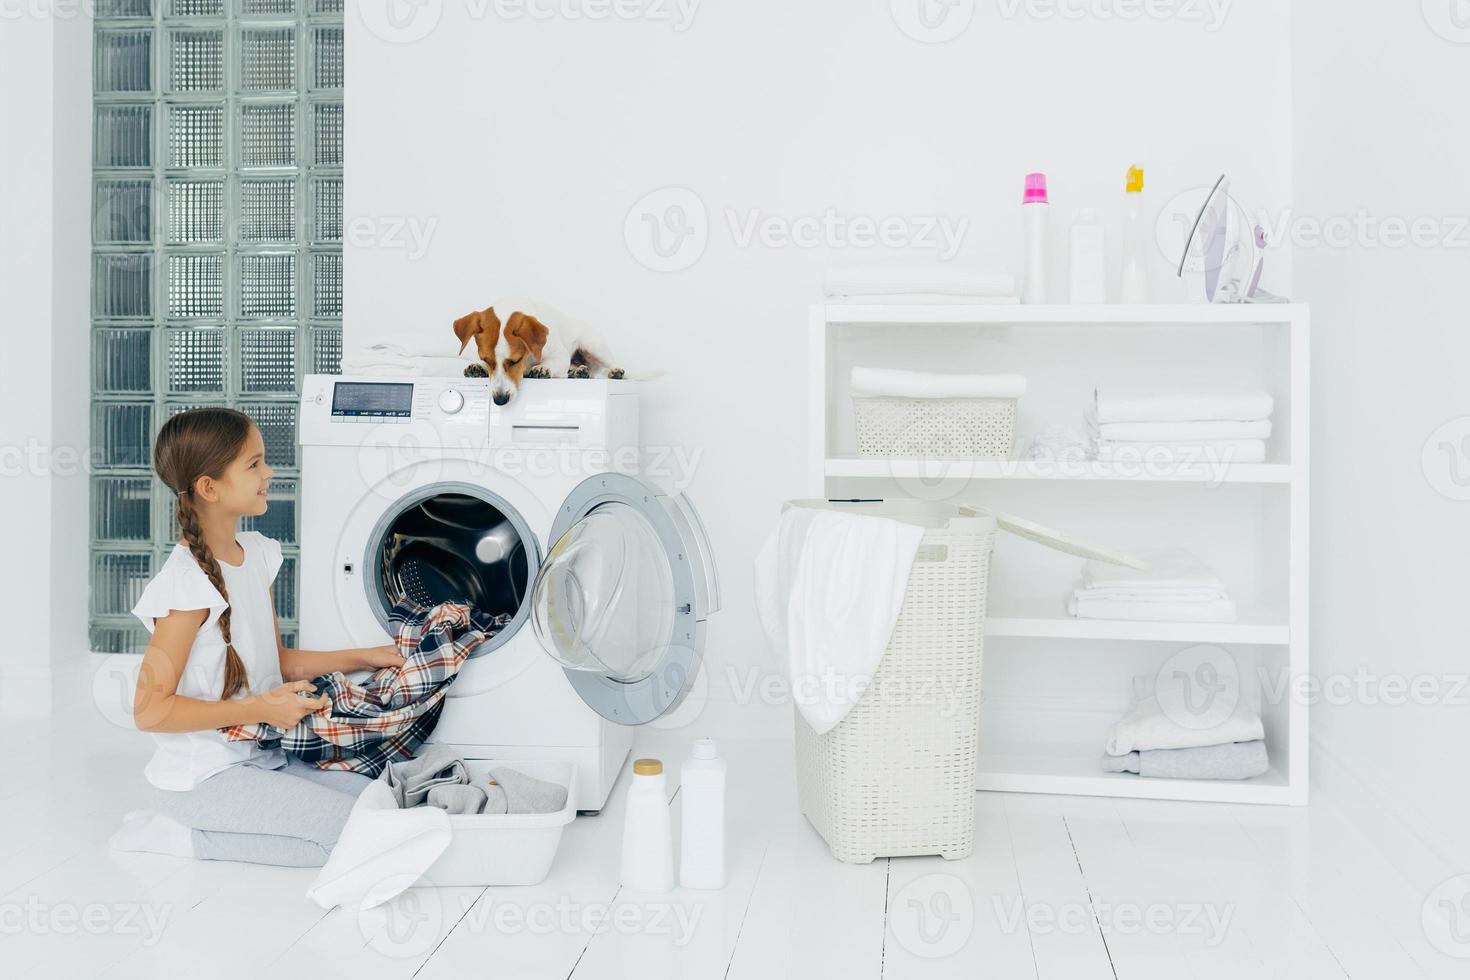 hushållning, barn och hushållssysslor koncept. glad unge laddar ur tvättmaskin, lägger rena tvättade kläder i handfat, nyfiken hund tittar uppifrån, ligger på tvättmaskin i tvättstugan hemma foto